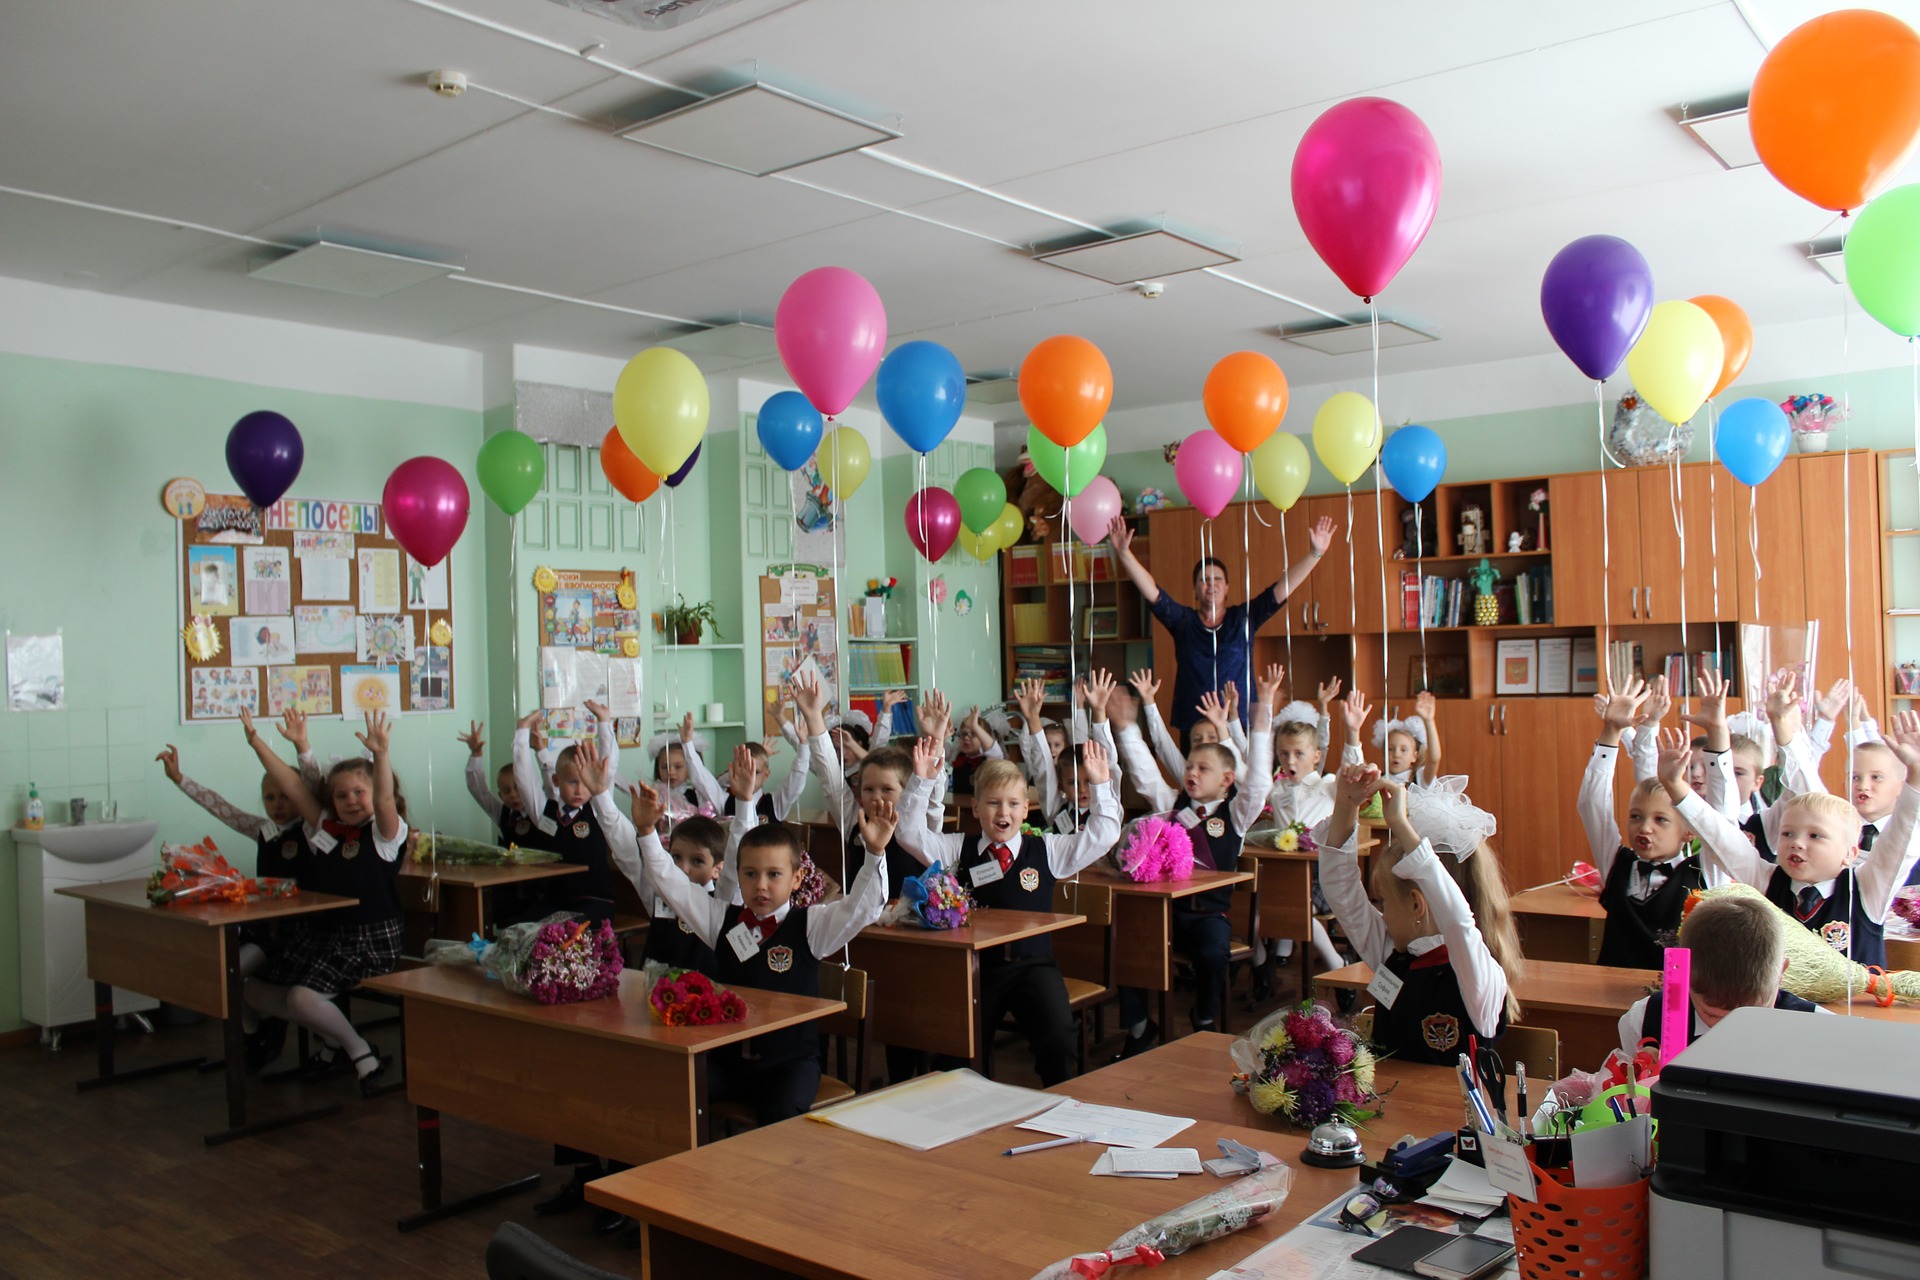 Luokitus Tšeljabinskin parhaisiin kouluihin vuonna 2020